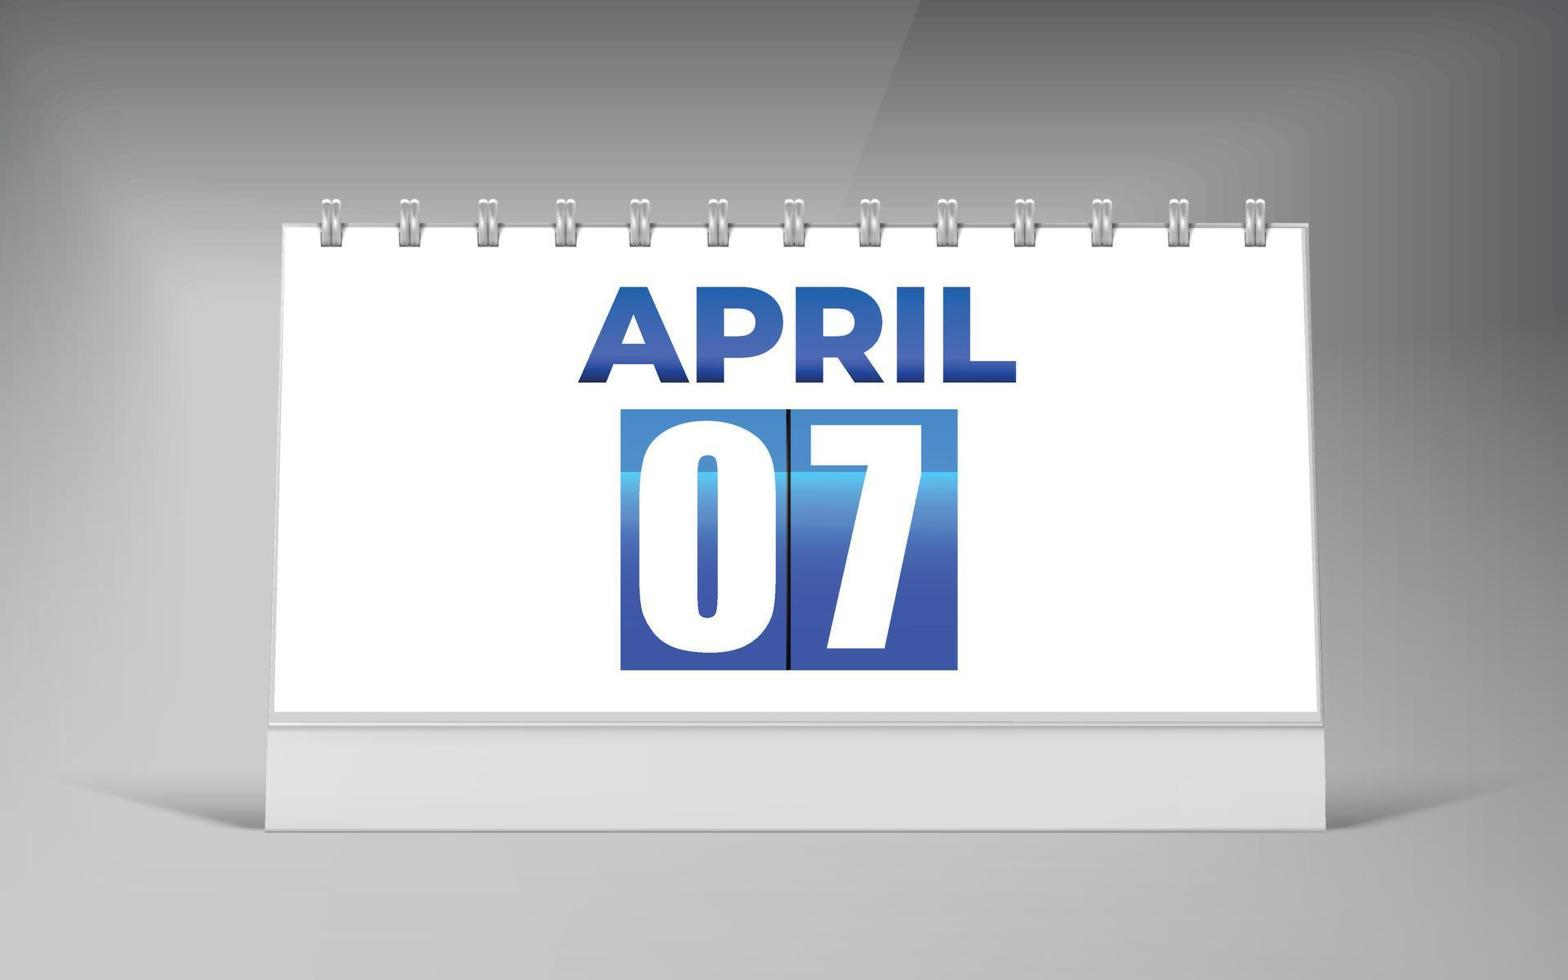 April 07, Desk Calendar Design Template. Single Date Calendar Design. vector